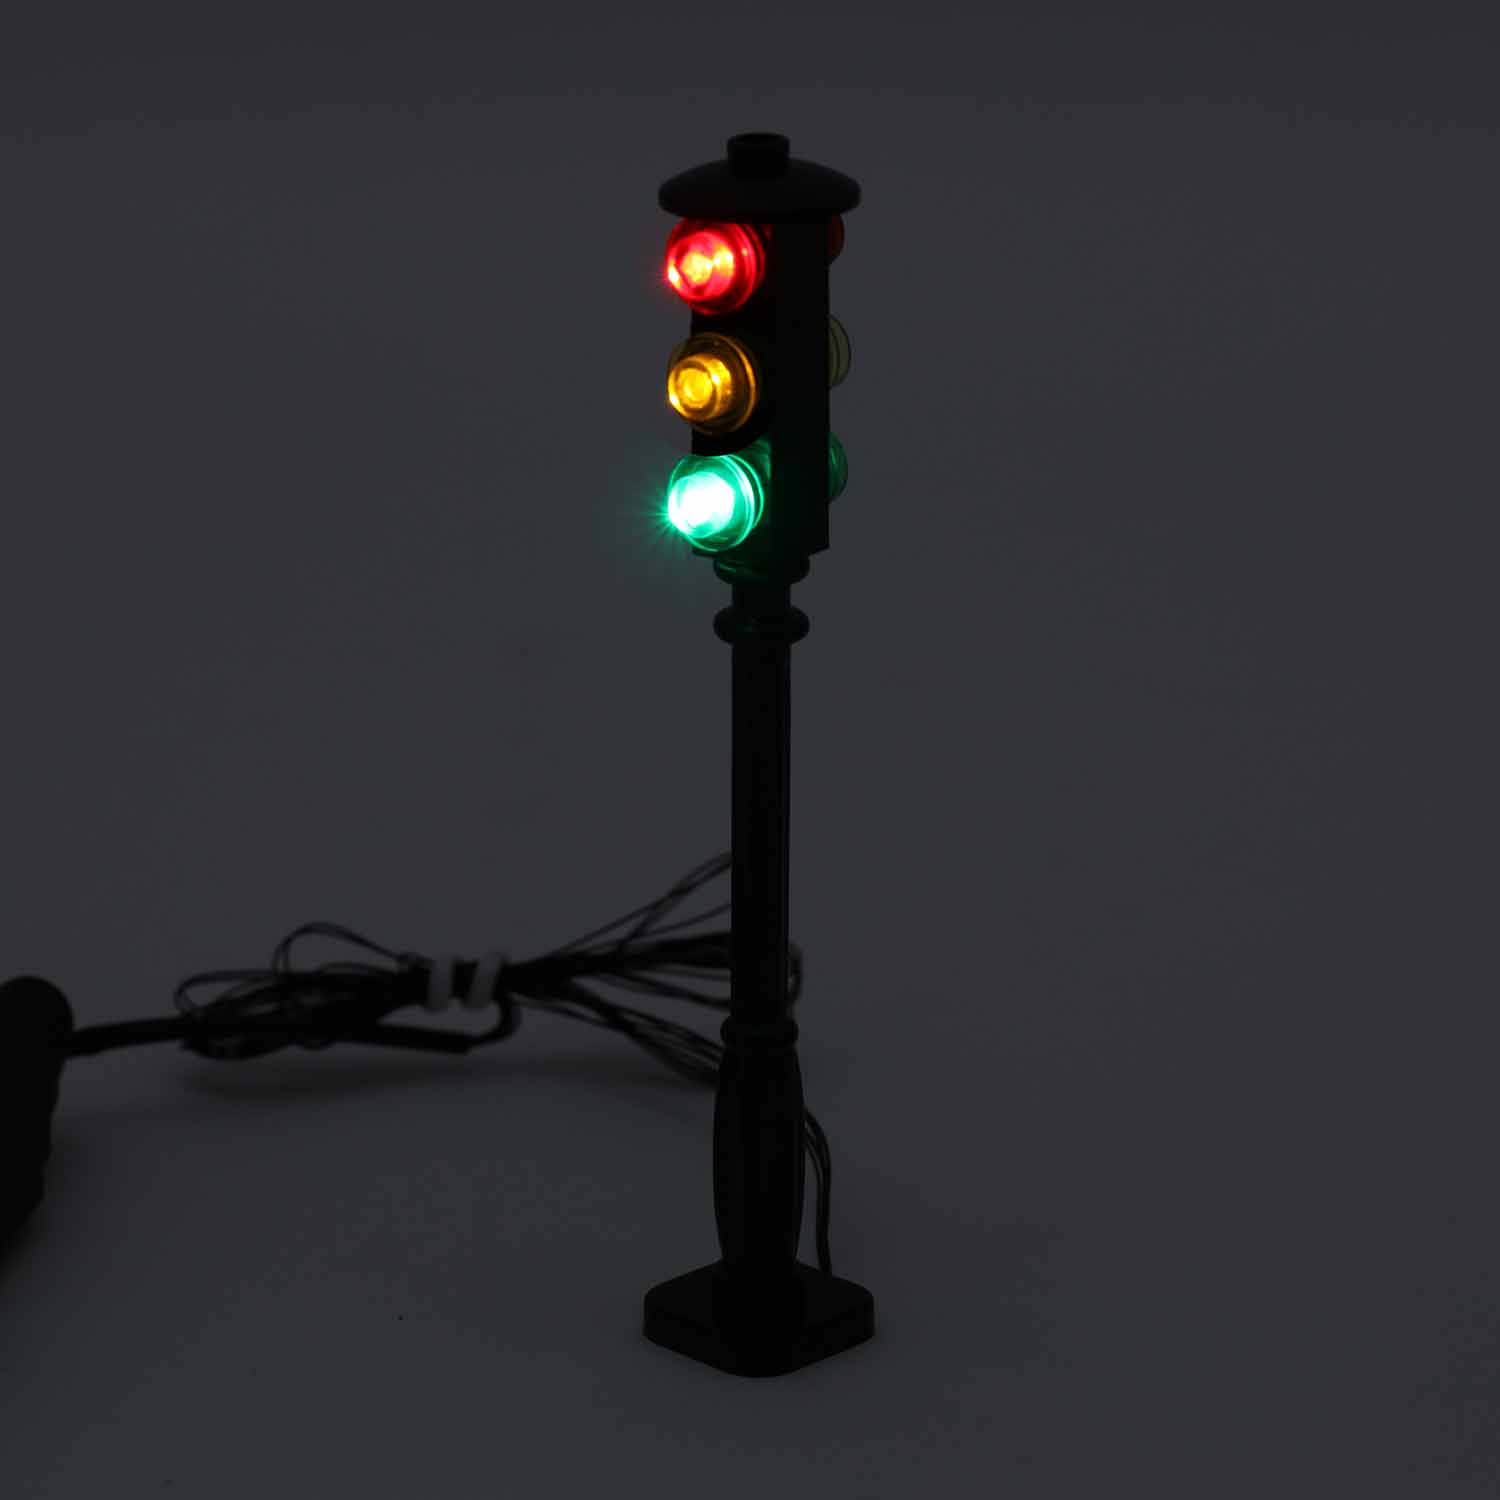 Light-Up Traffic Light